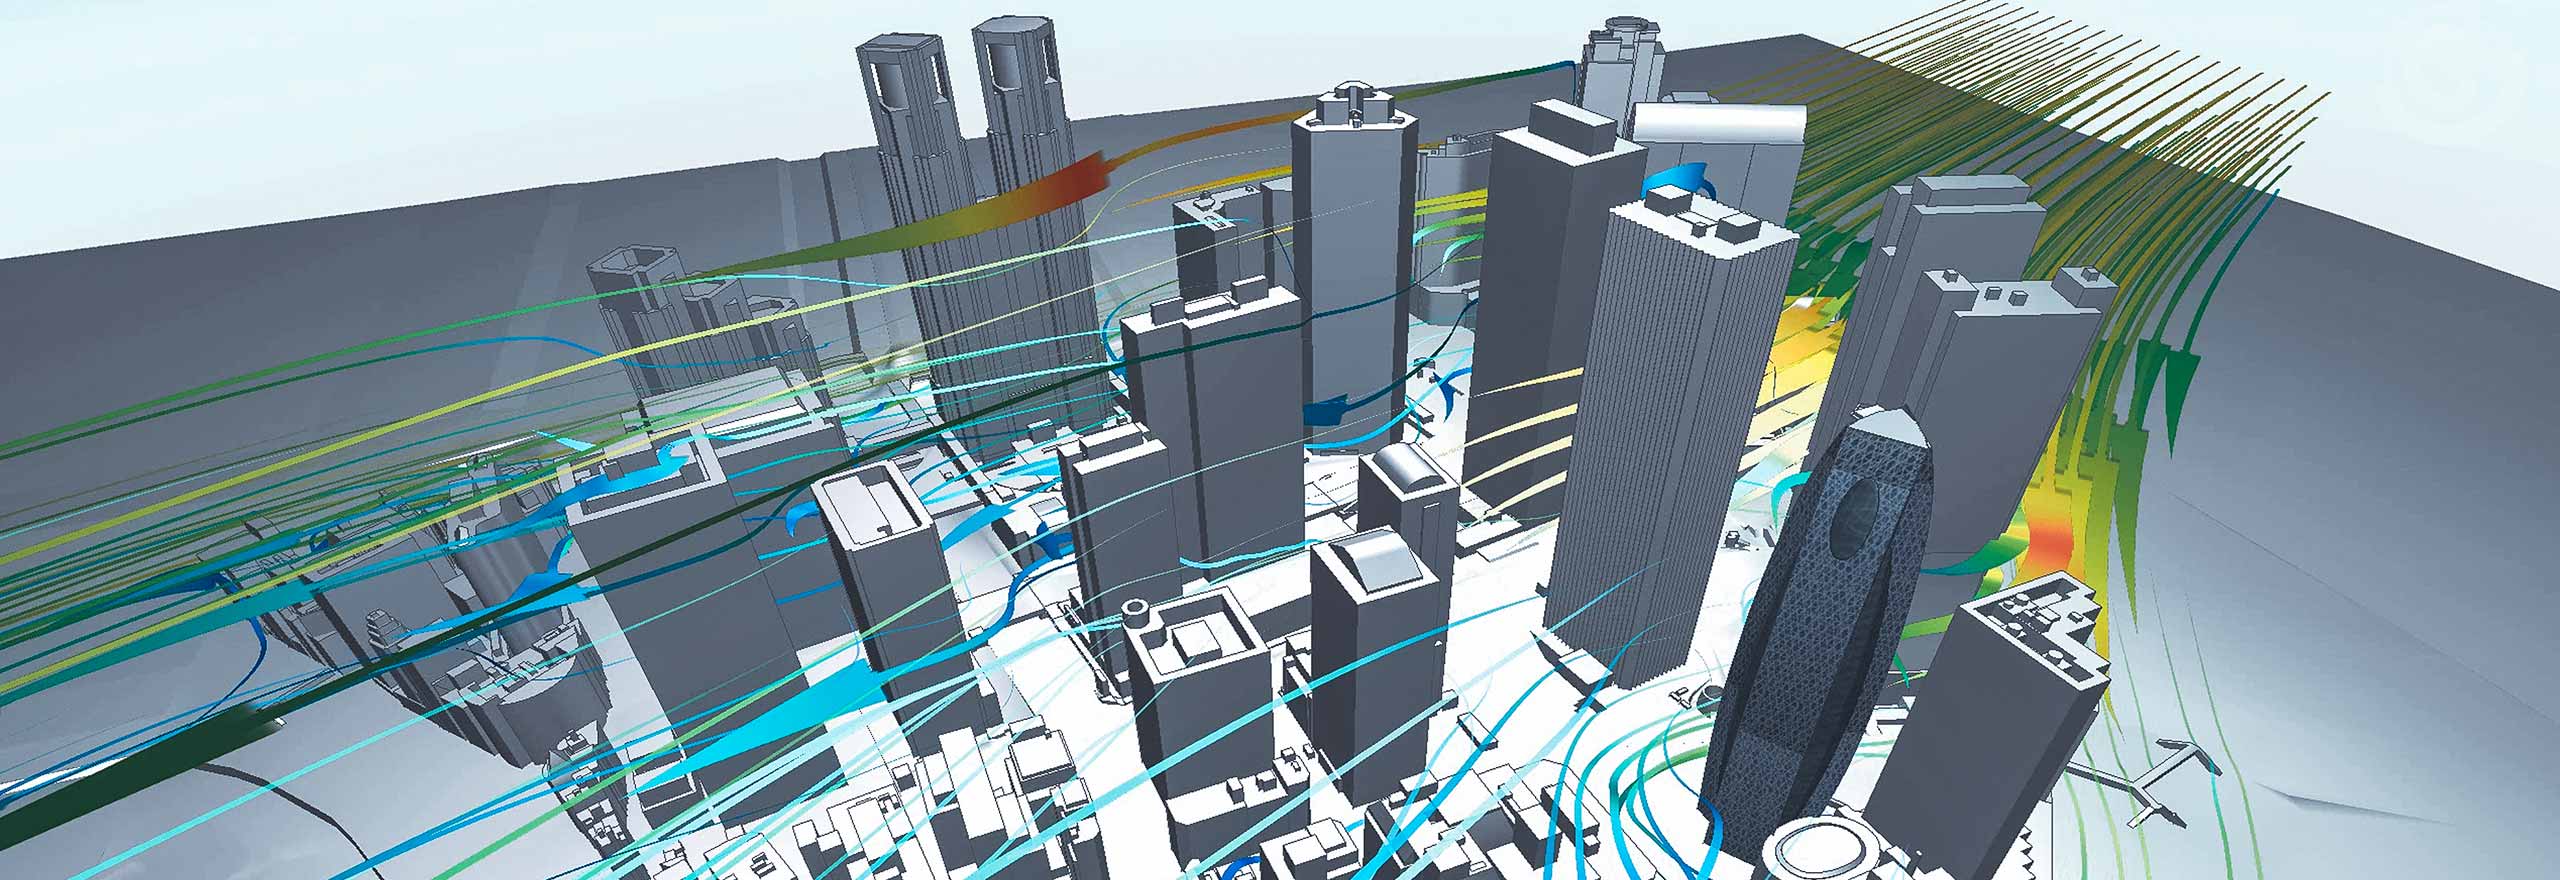 Visualização do fluxo de ar ao redor de edifícios usando o software de simulação multifísica CFD